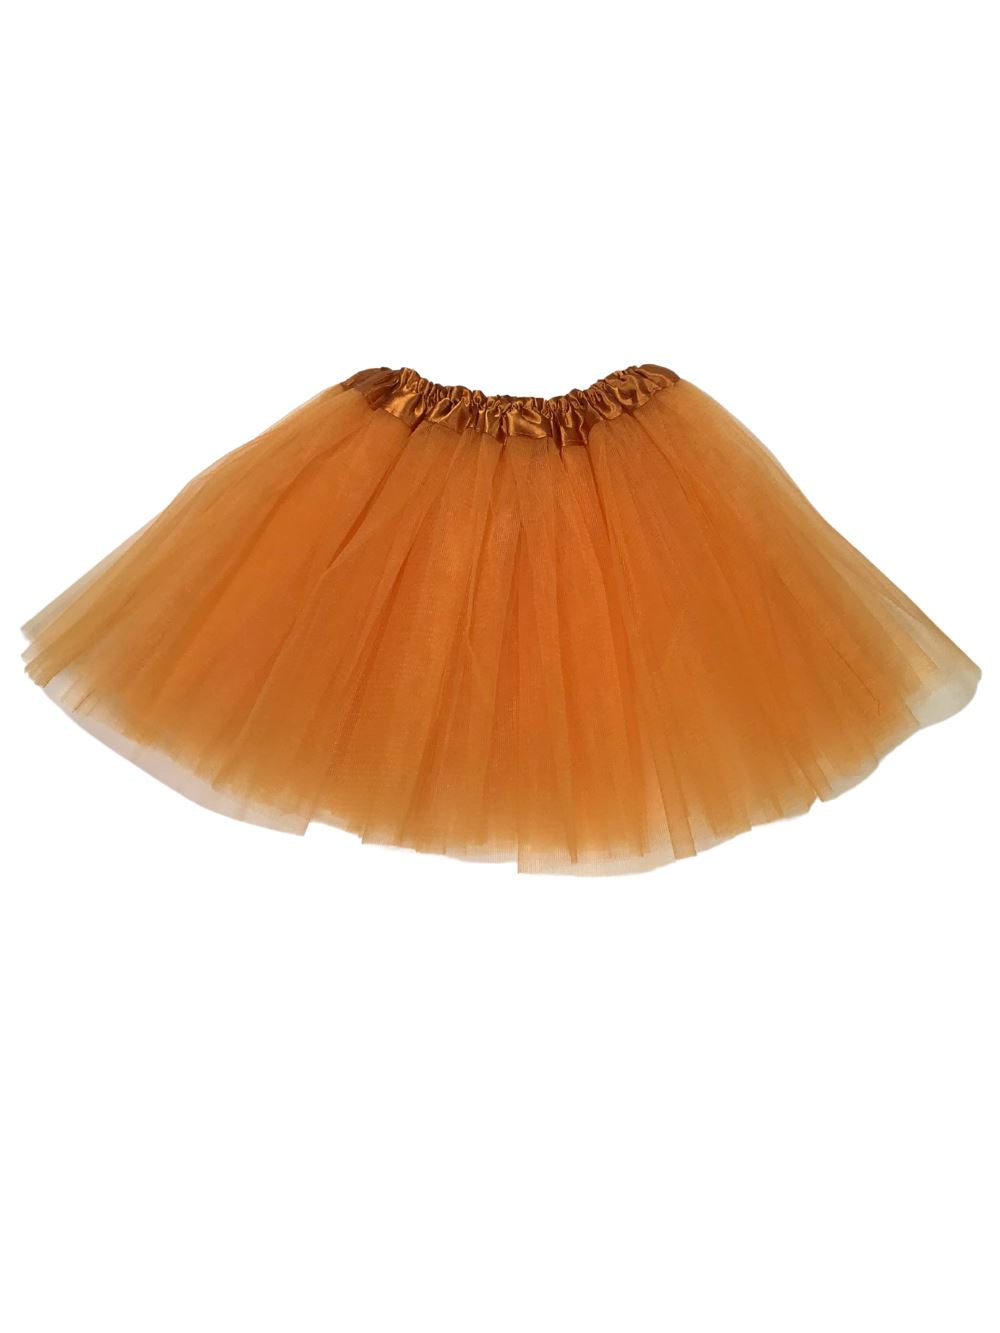 Dark Gold Tutu Skirt - Kids Size 3-Layer Tulle Basic Ballet Dance Costume Tutus for Girls - Sydney So Sweet